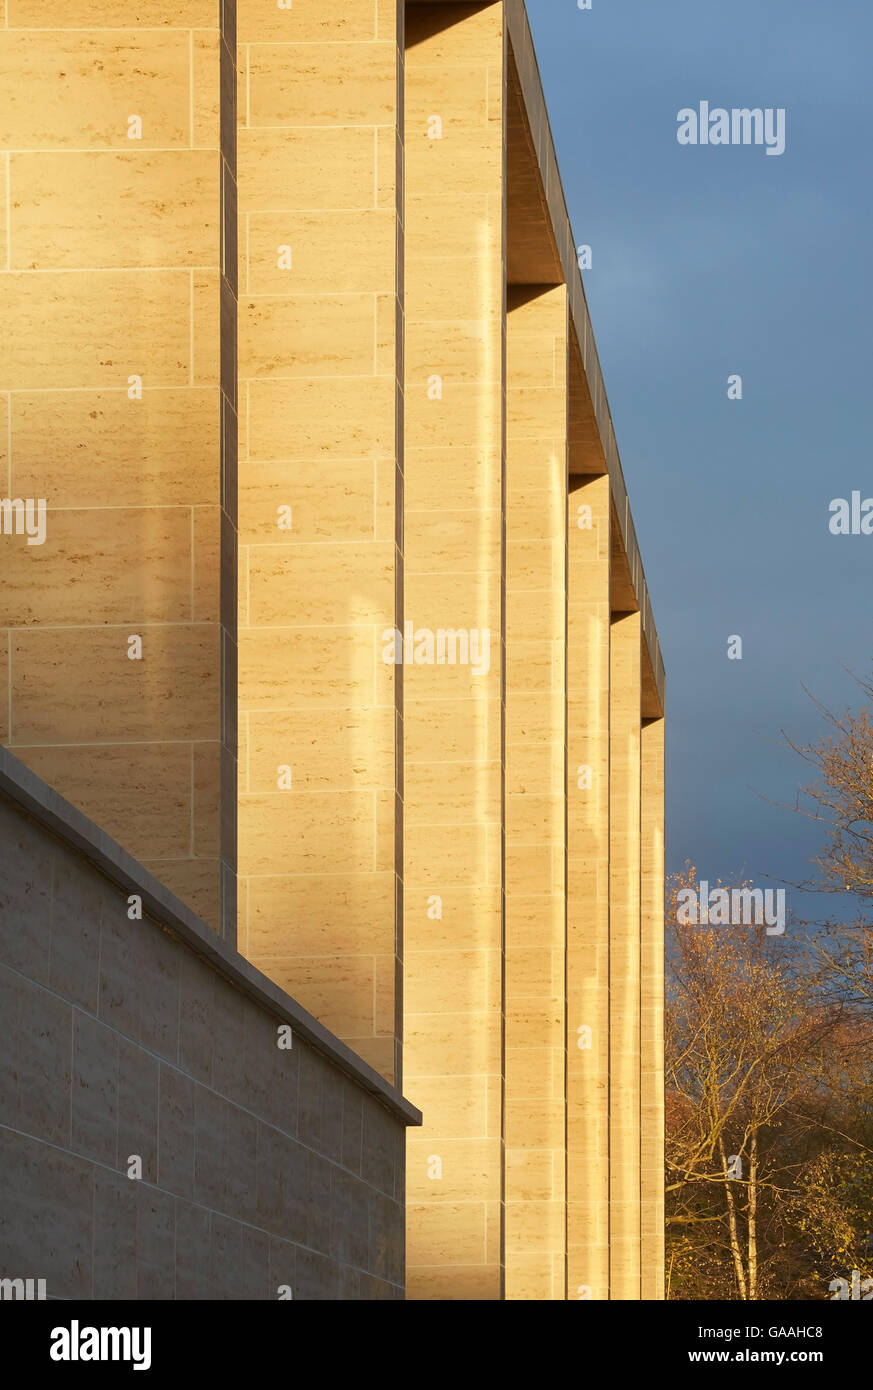 Détail de façade en pierre doublés. Suivant - Maison et Jardin Magasins, Southampton, Royaume-Uni. Architecte : Stanton Williams, 2014. Banque D'Images